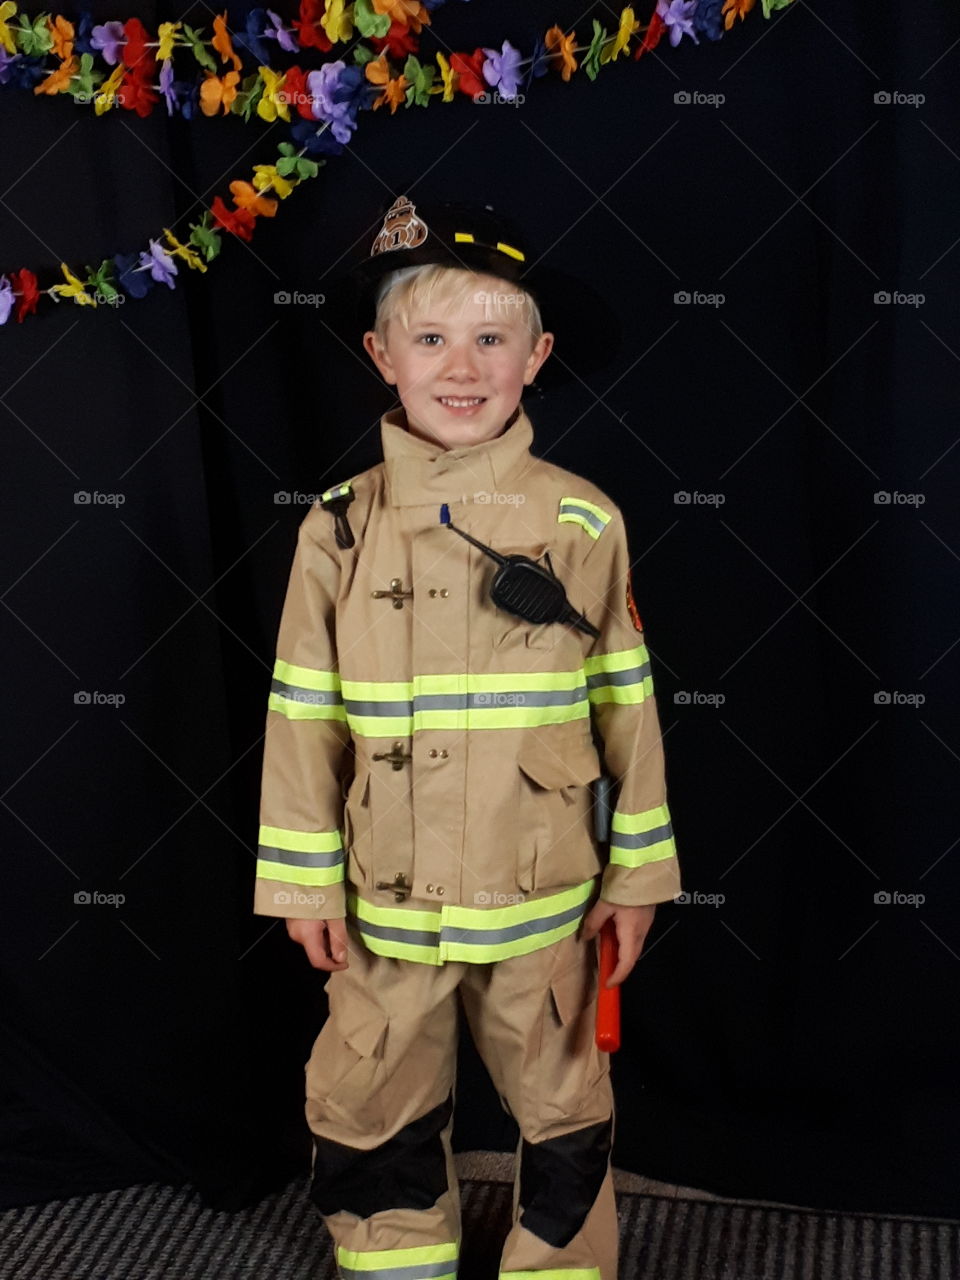 Firefighter for Halloween